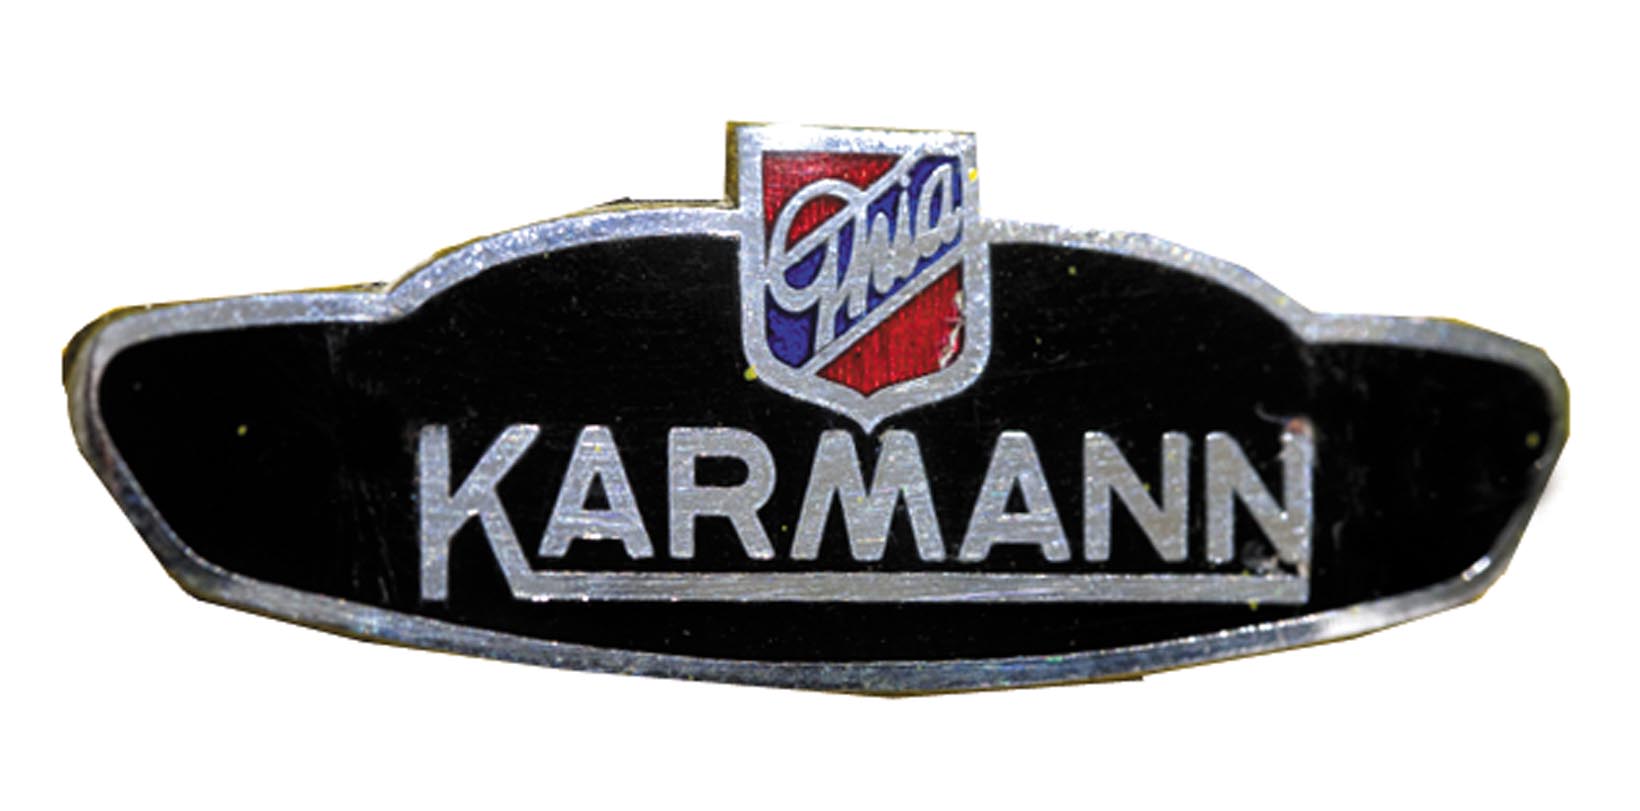 1957-VW-Karmann-Ghia-Corvair-Top-Ghia-222-01.jpg